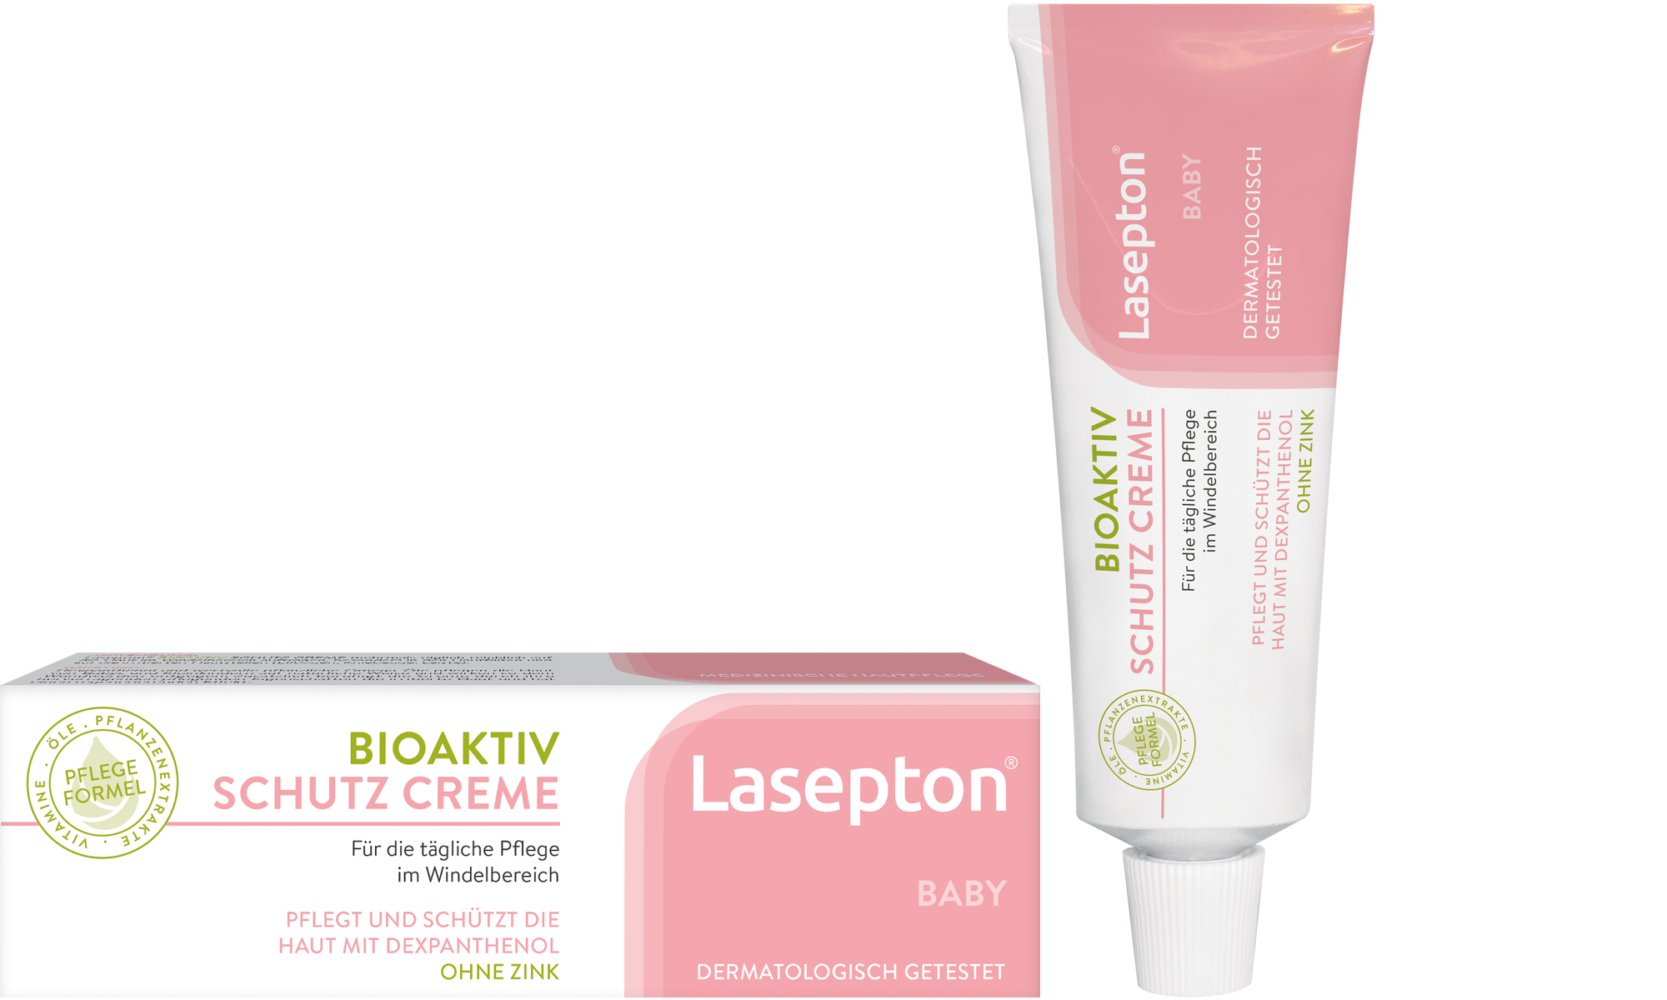 Lasepton® BABY Bioaktiv Schutz-Creme - zur täglichen Pflege und Vorbeugung von Hautrötungen